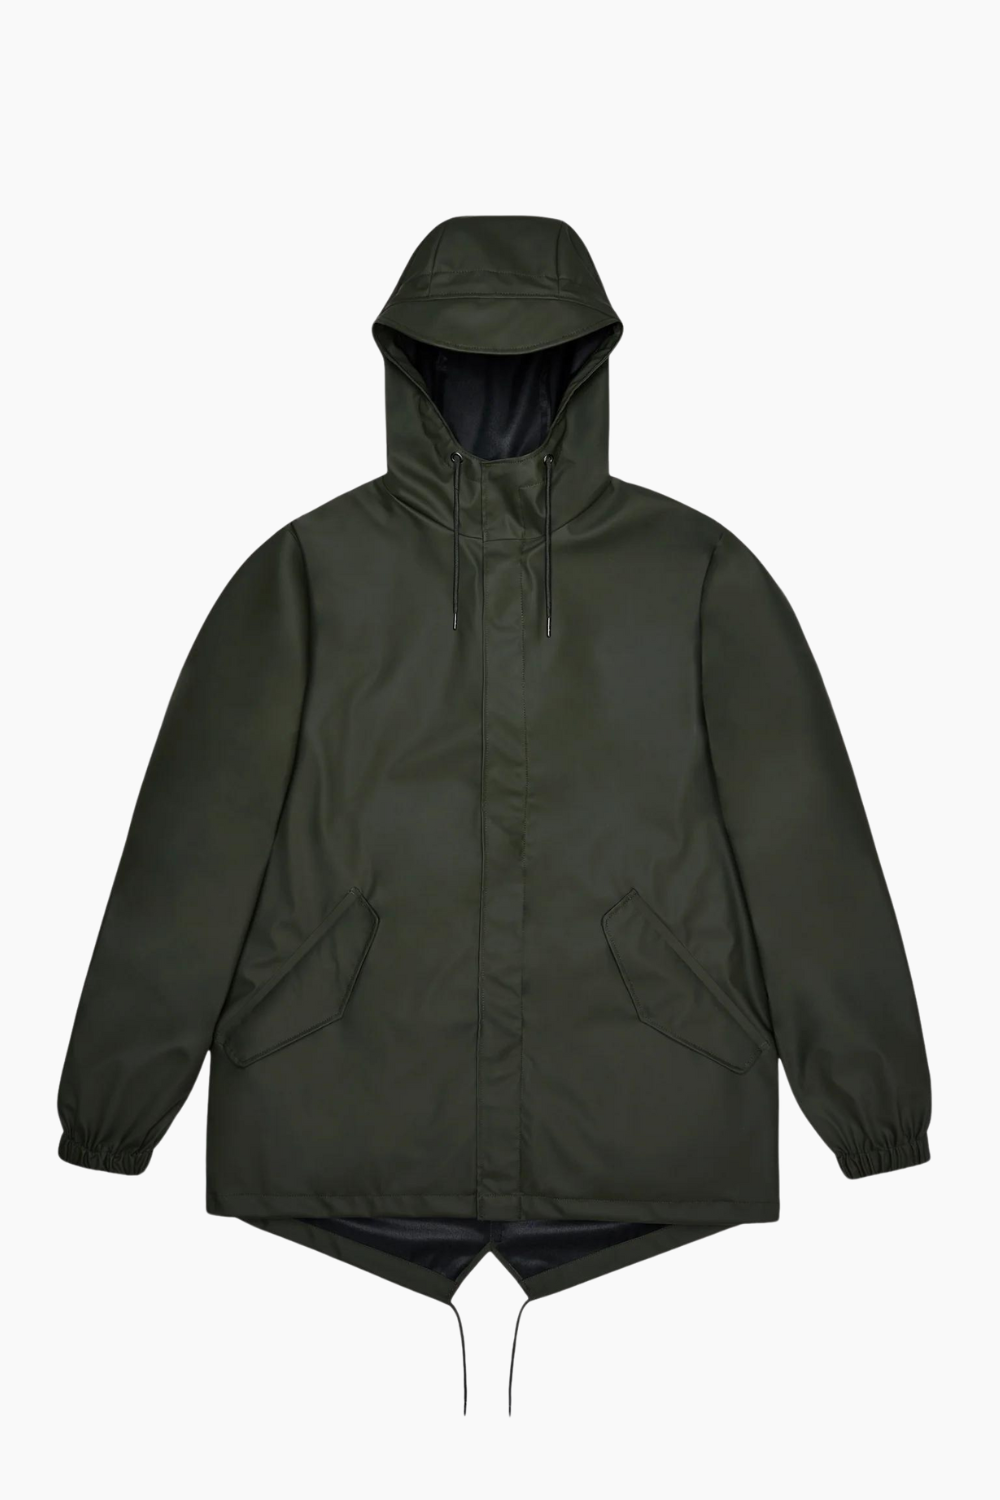 Fishtail Jacket W3 - Green - Rains - Grøn S